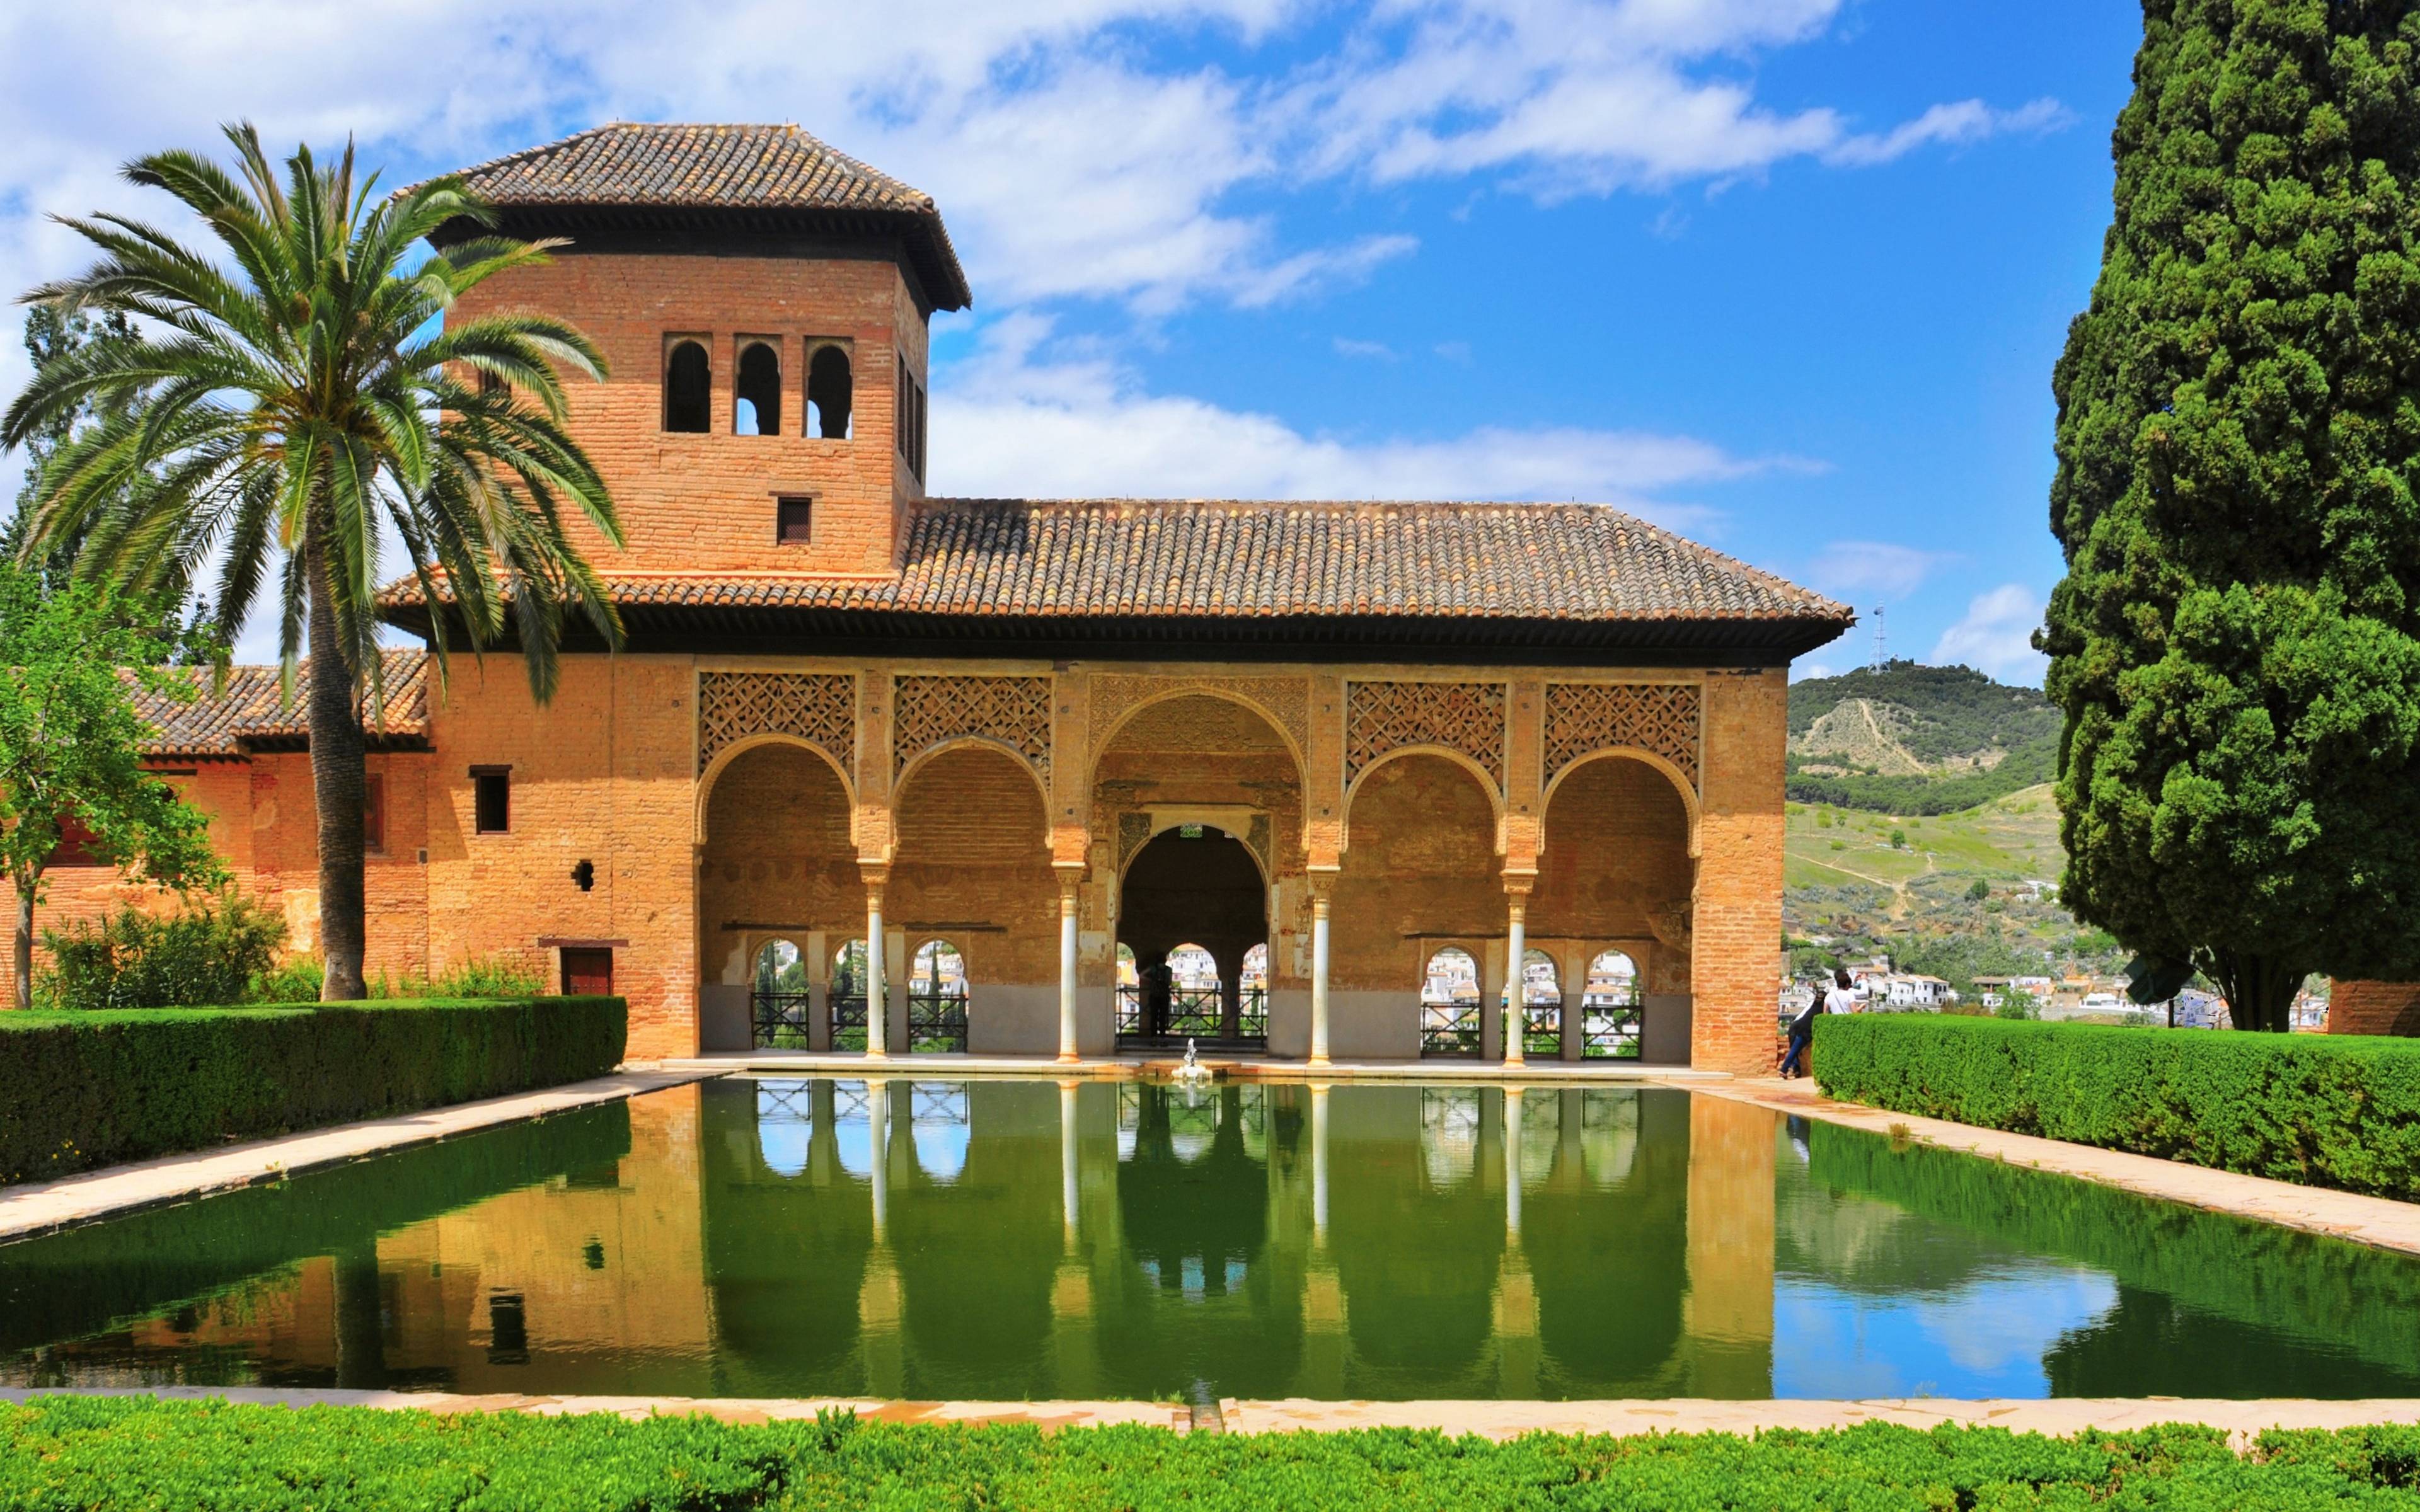 Découverte de l'Alhambra et route vers Cordoue